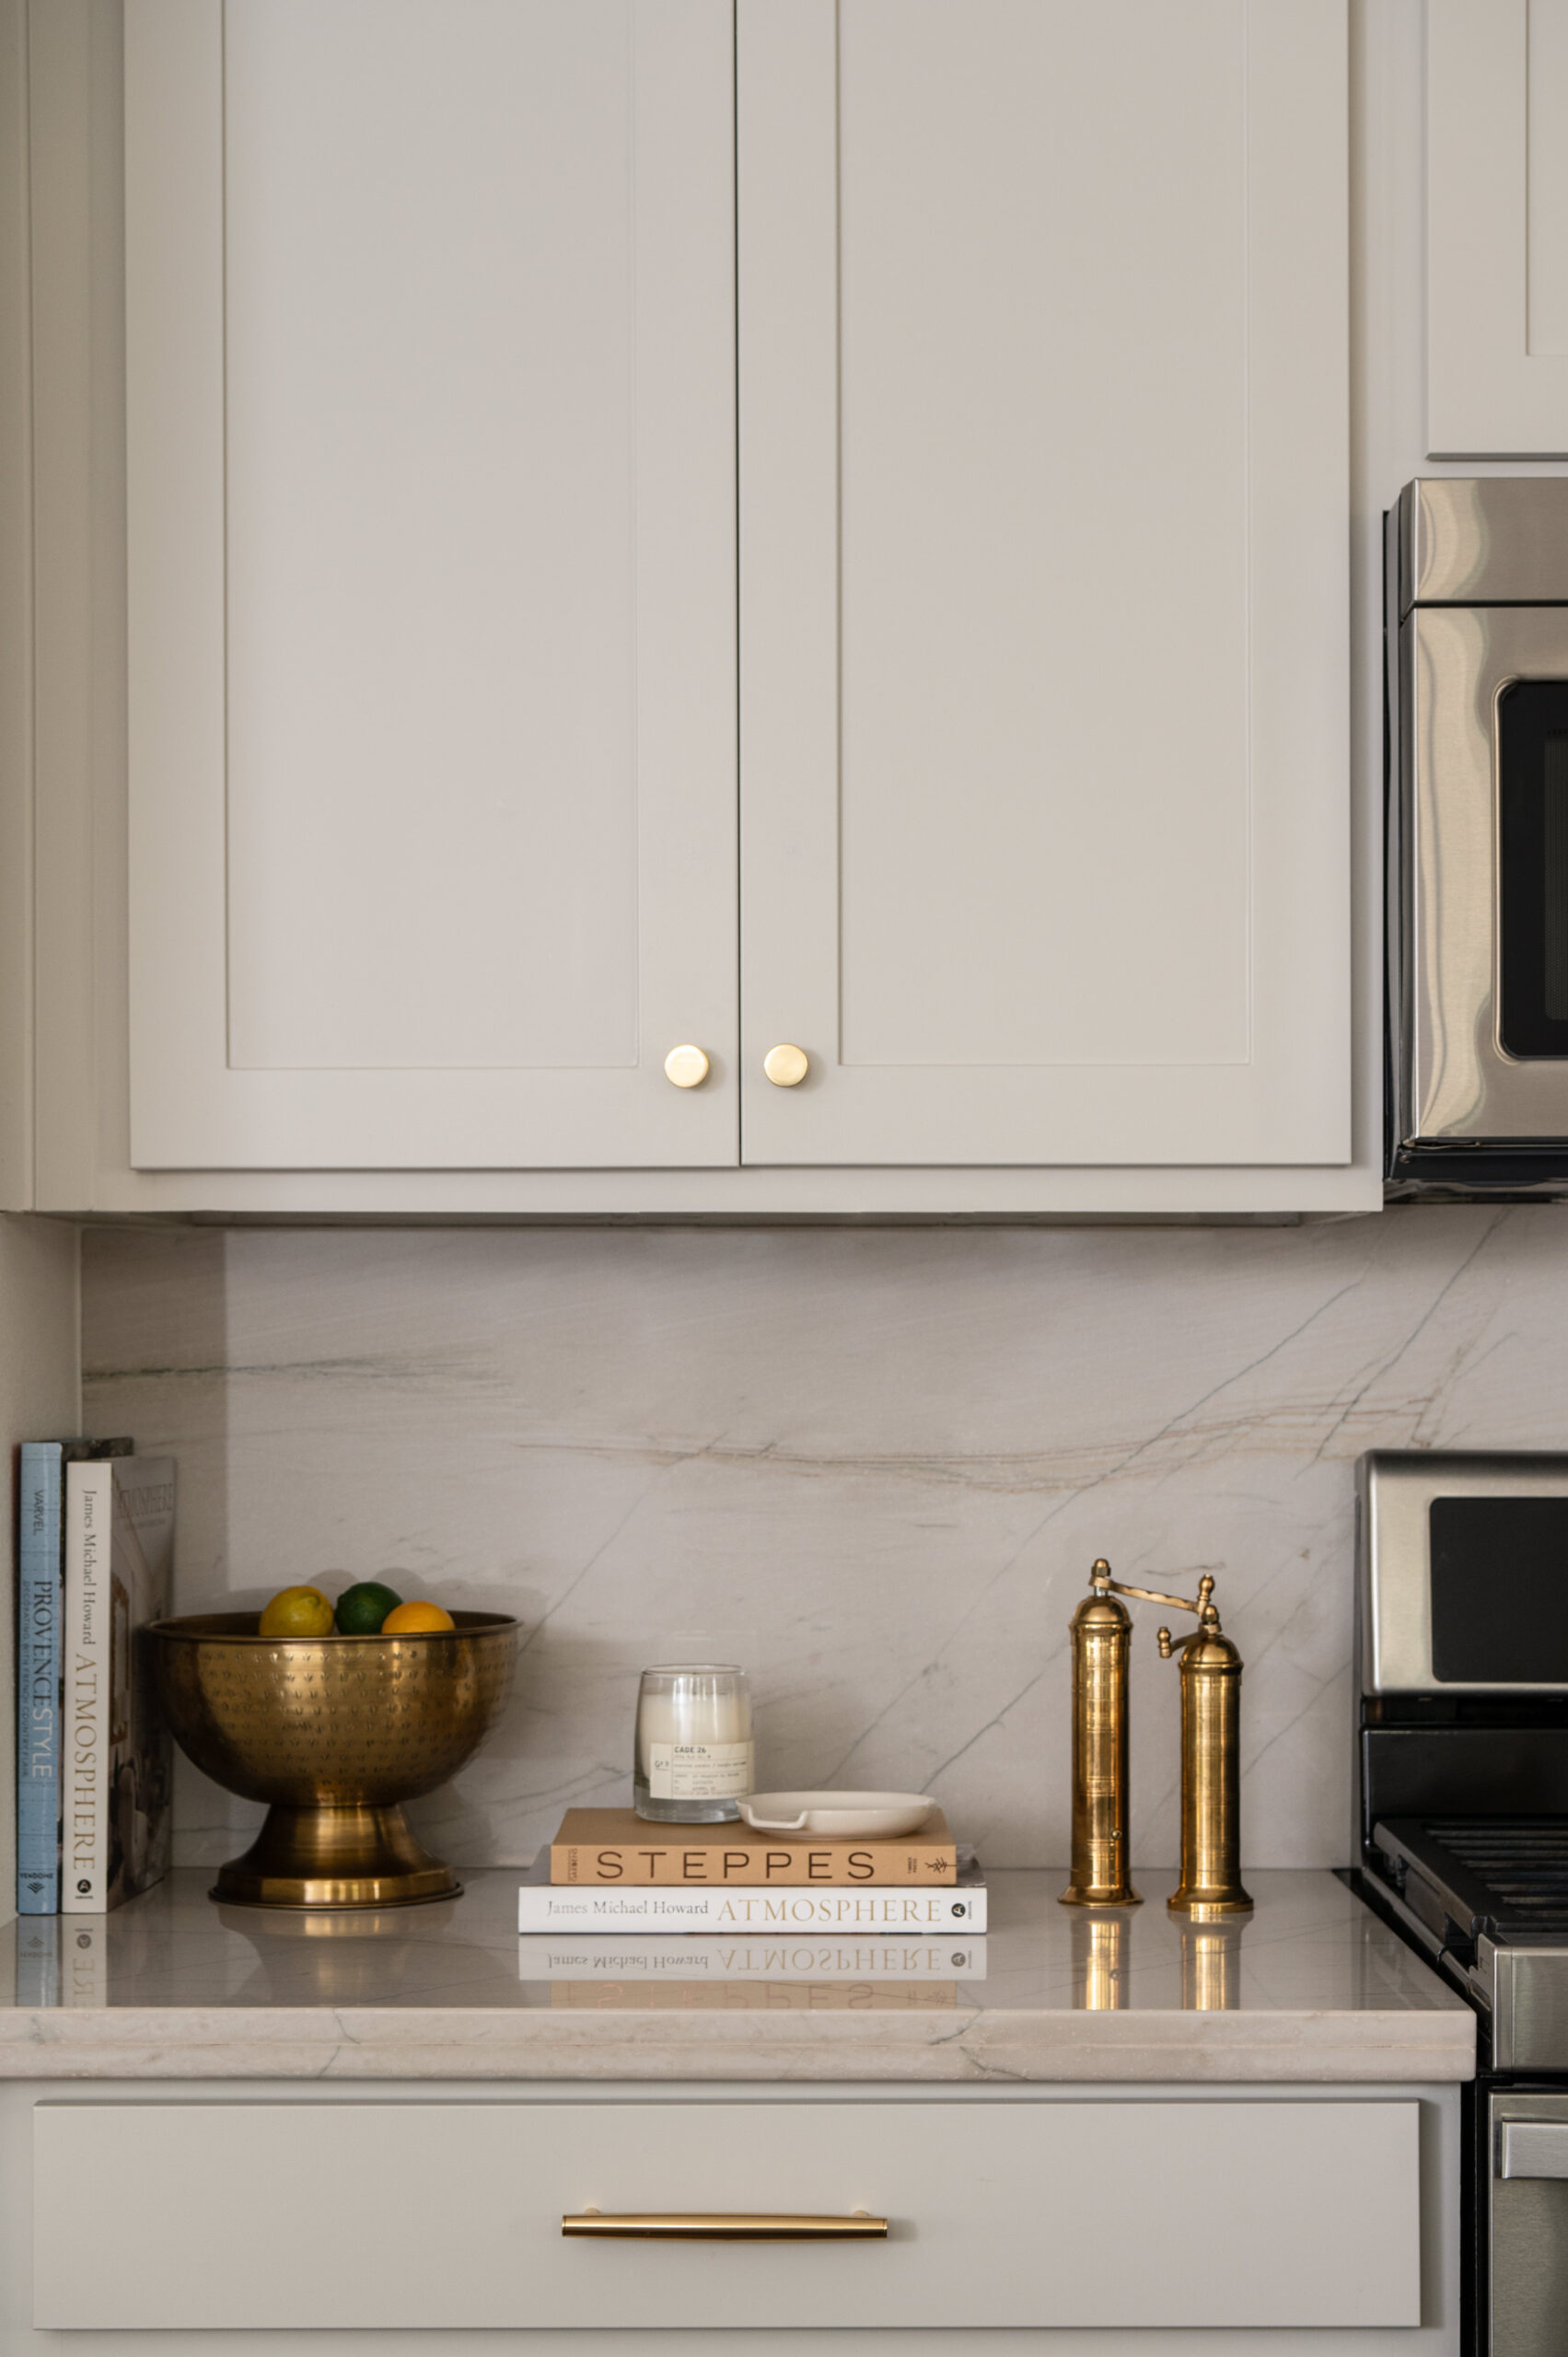 Classy kitchen interior design with marble backsplash